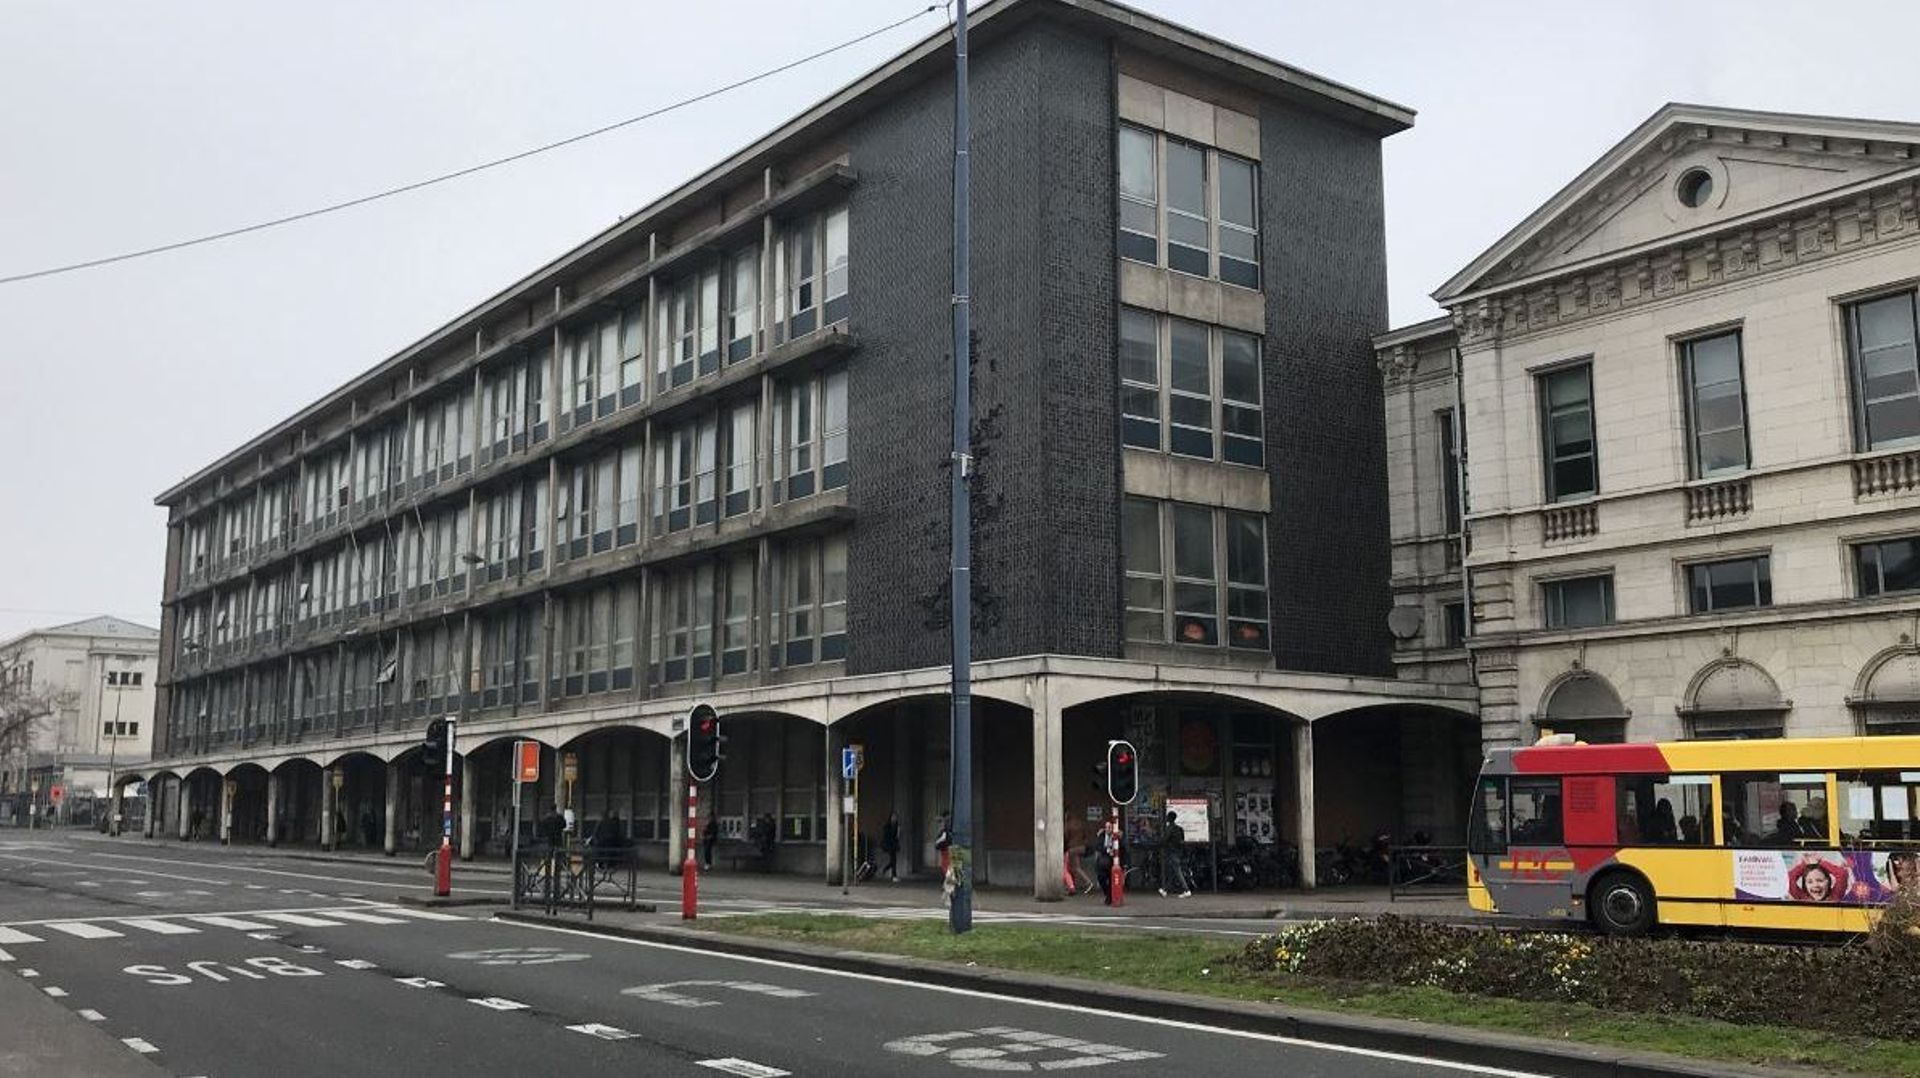 Le chancre de l'ancienne poste, à côté de la gare de Namur, va faire place, d'ici à la fin de l'année prochaine, à un nouvel immeuble de bureaux.